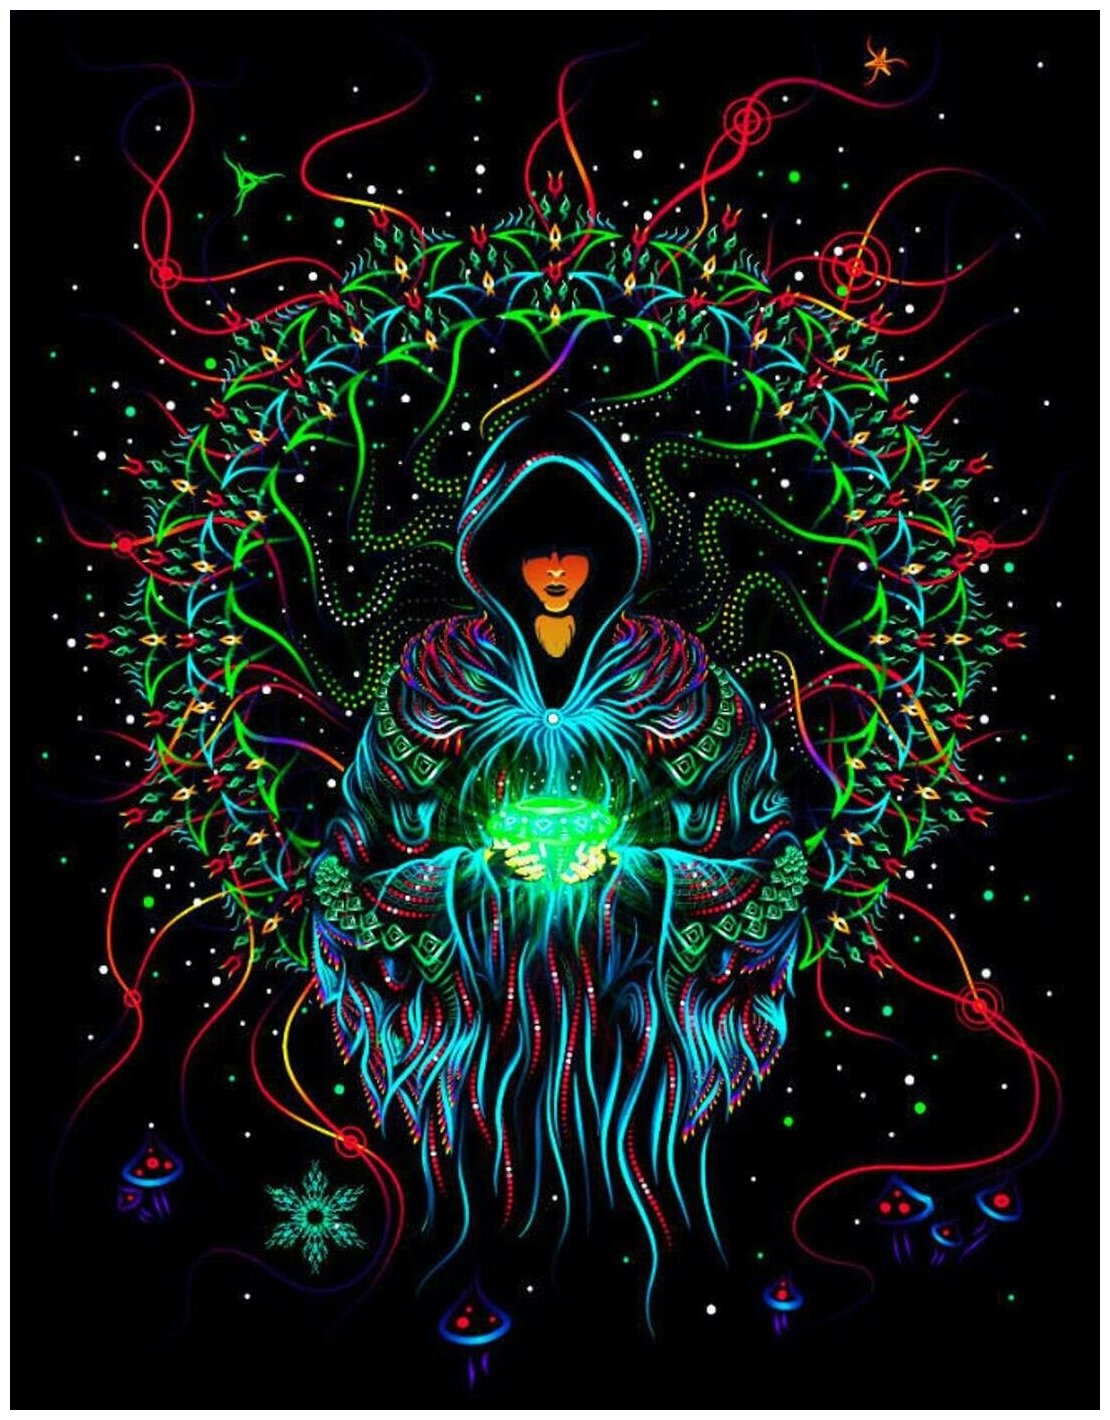 UV-активное полотно "Crystal Wizard", 50x75 см. Картина светящаяся в ультрафиолете с психоделическим рисунком, настенное украшение, постер, декорация.